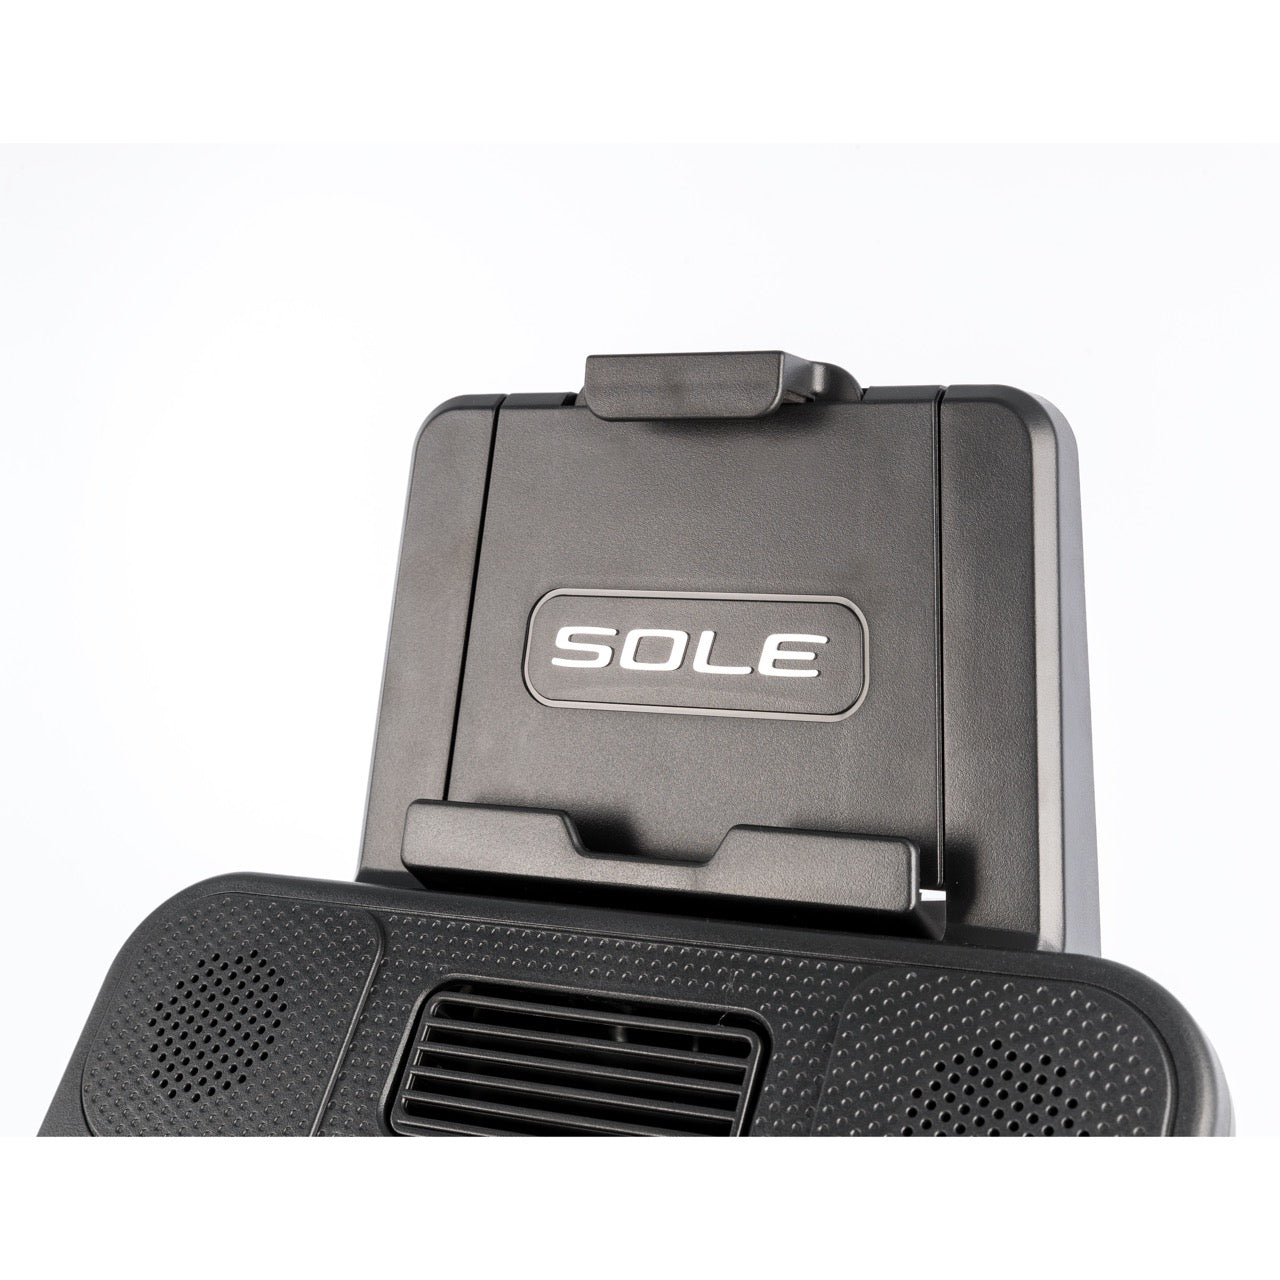 SOLE R92 (2020 Model) - Cyber Week SALE